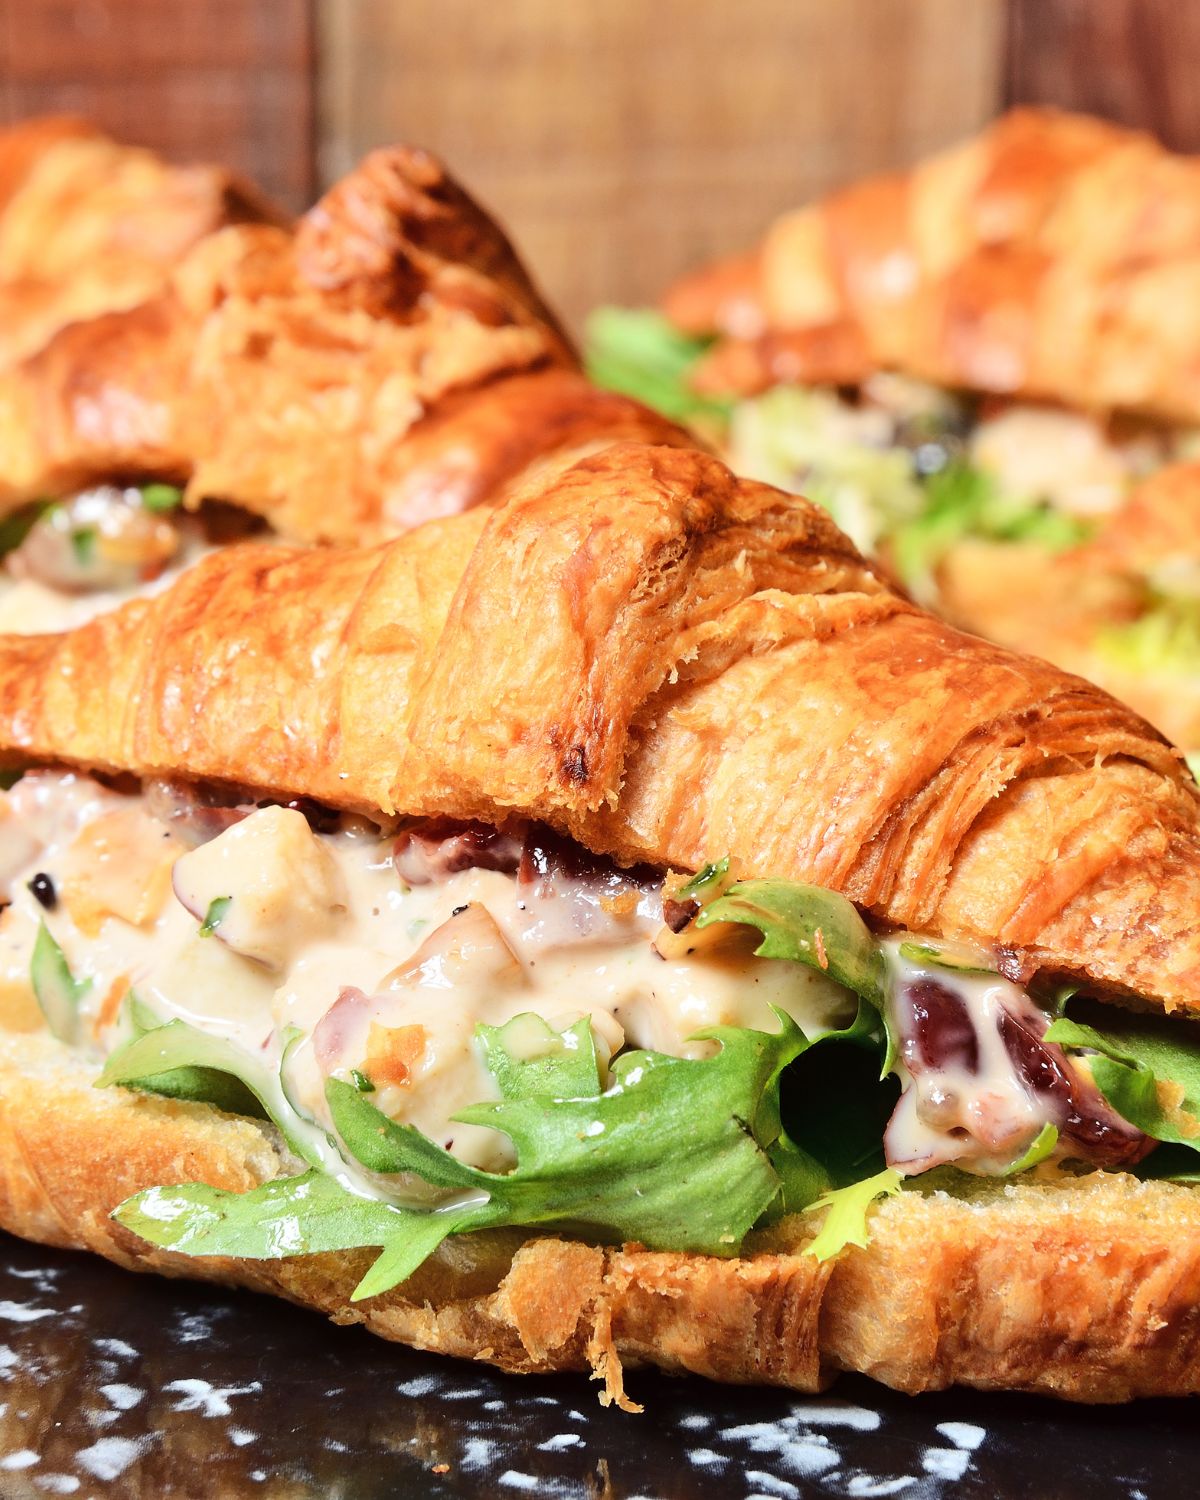 A croissant with taco shrimp salad sandwich.